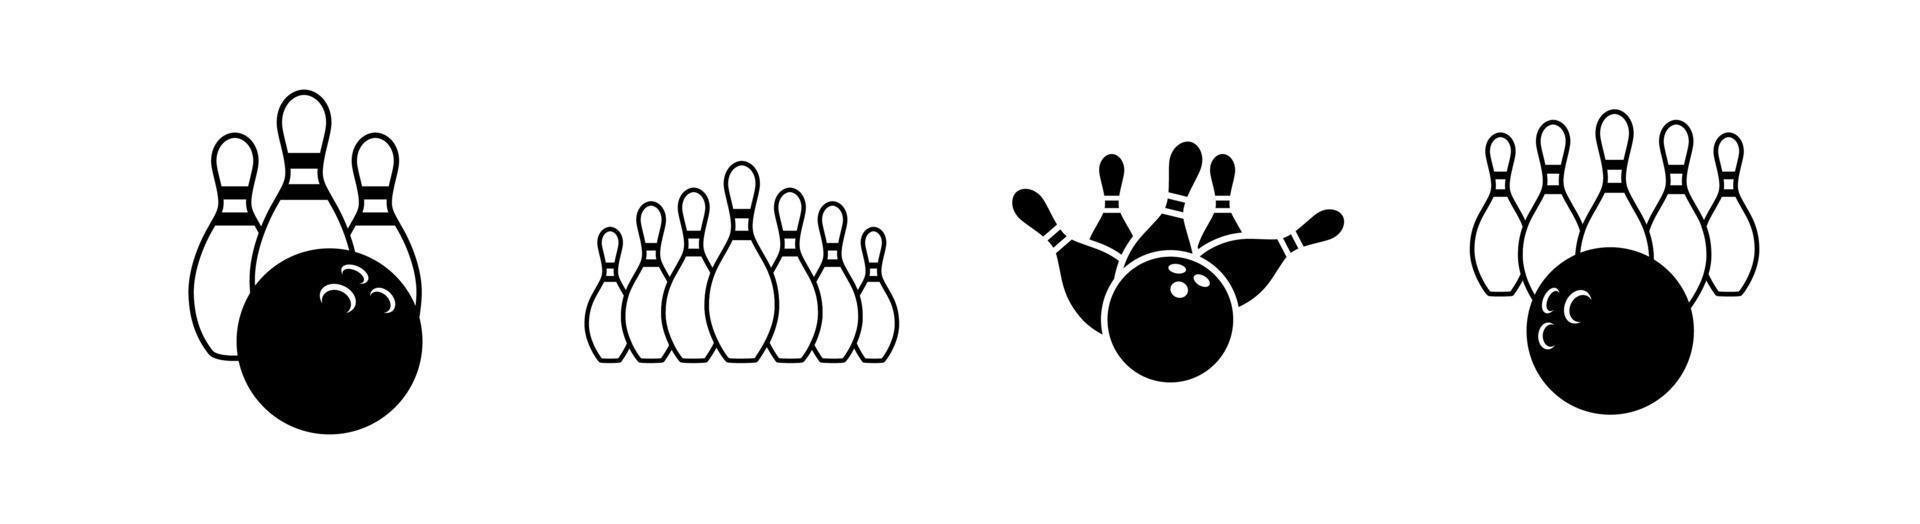 Bowlingkugel und Pin Hit Icon Design Element geeignet für Websites, Printdesign oder App vektor